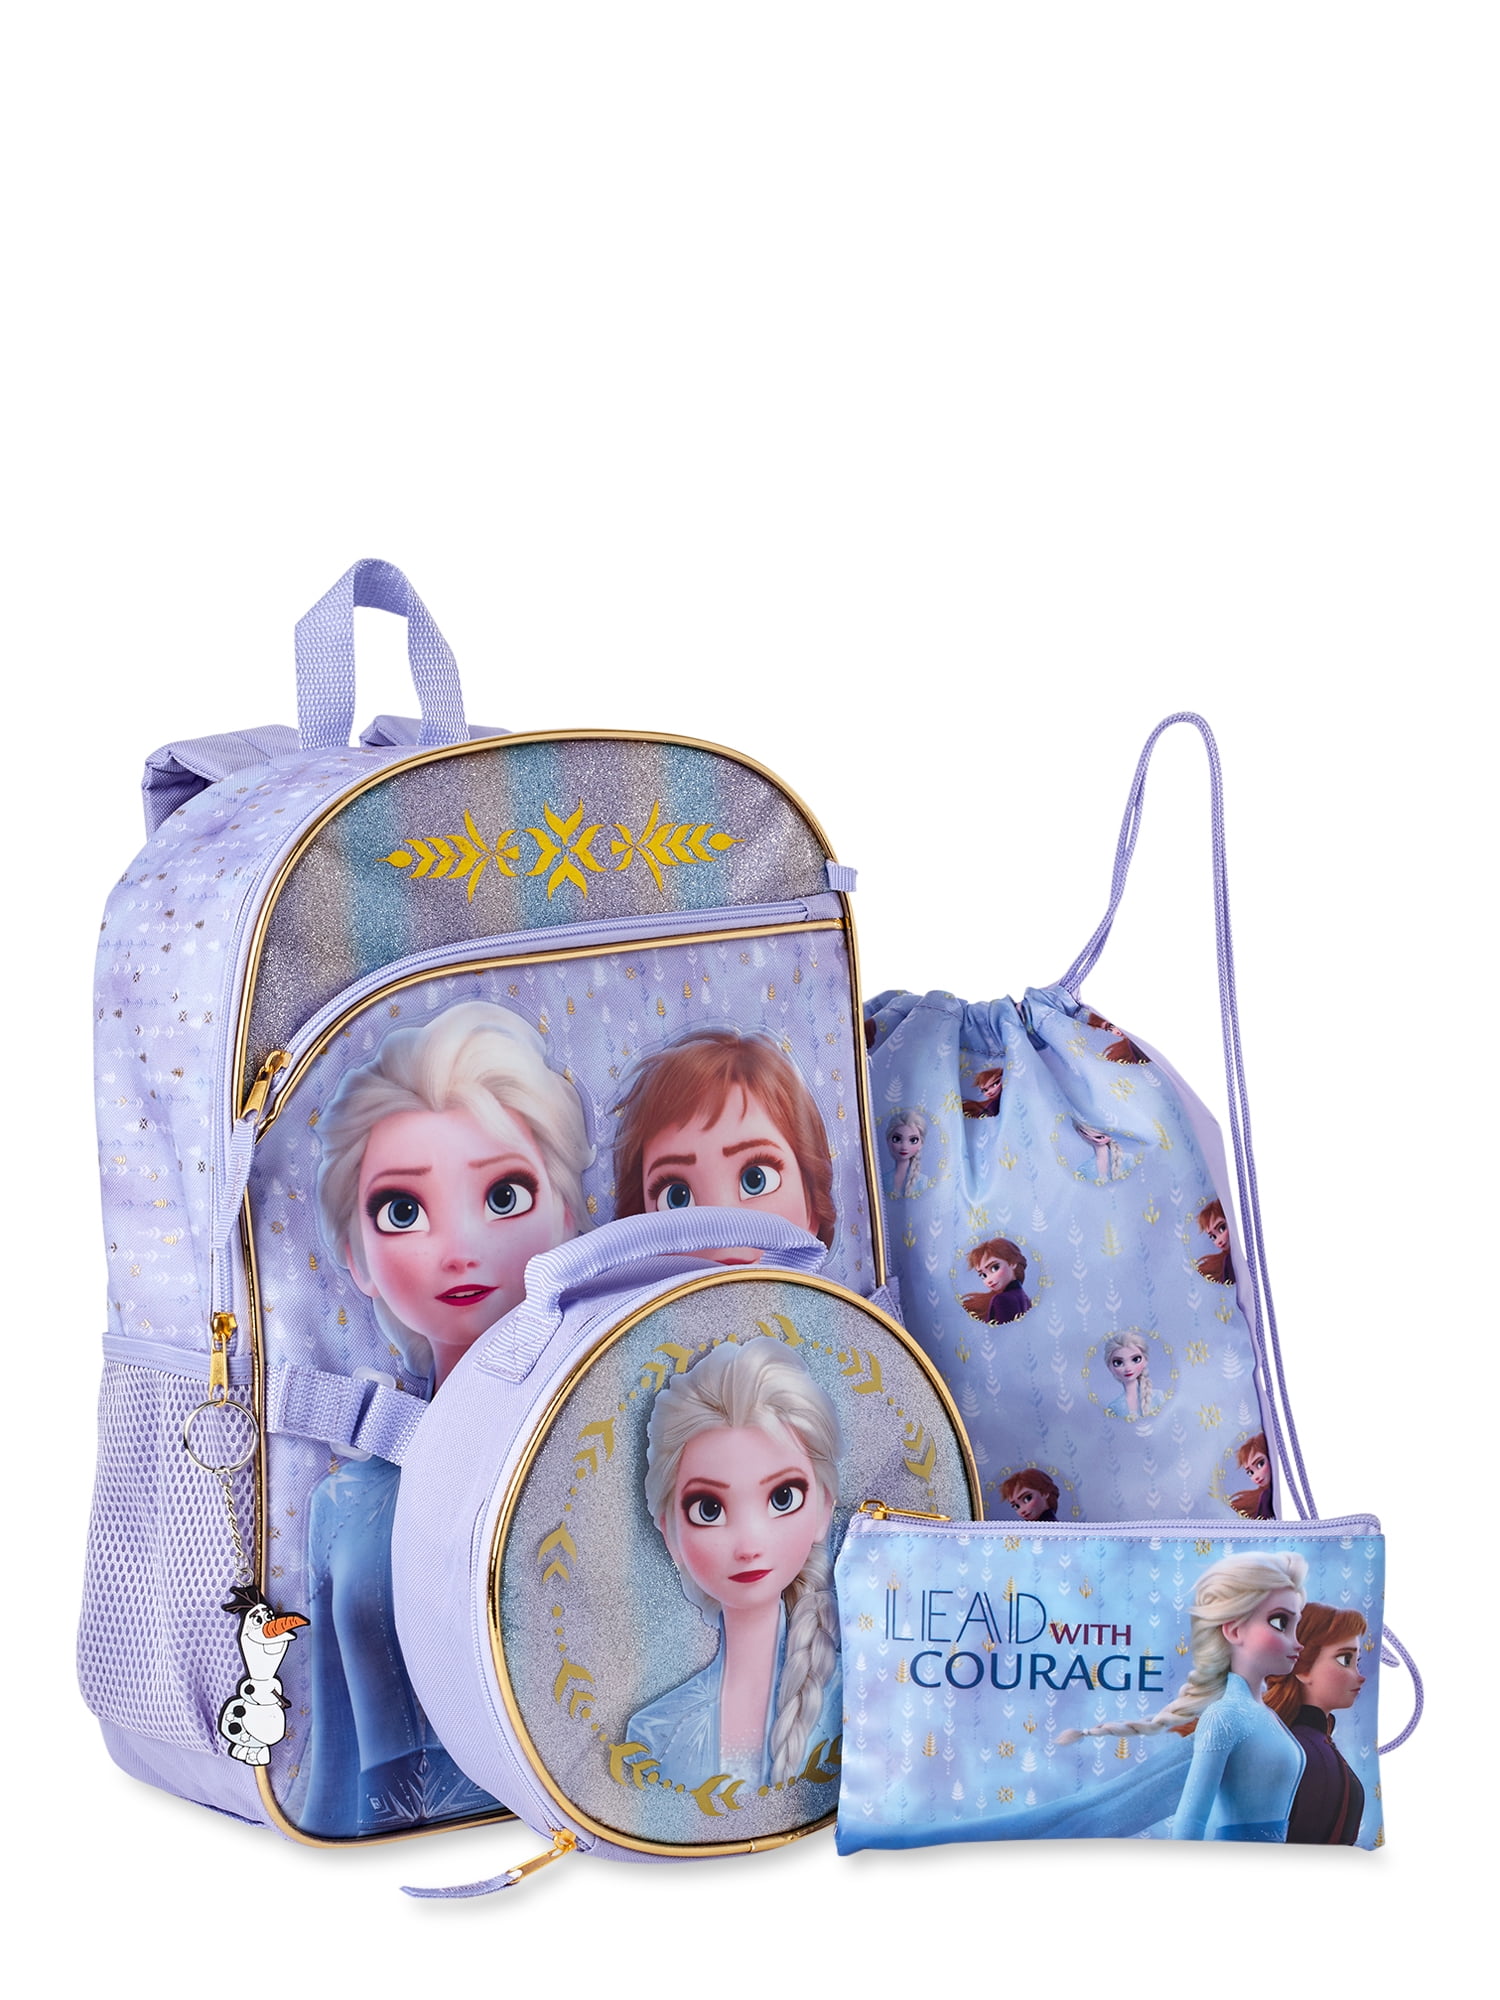 Disney Frozen Snow Queen 5 Piece Backpack Set,New! 